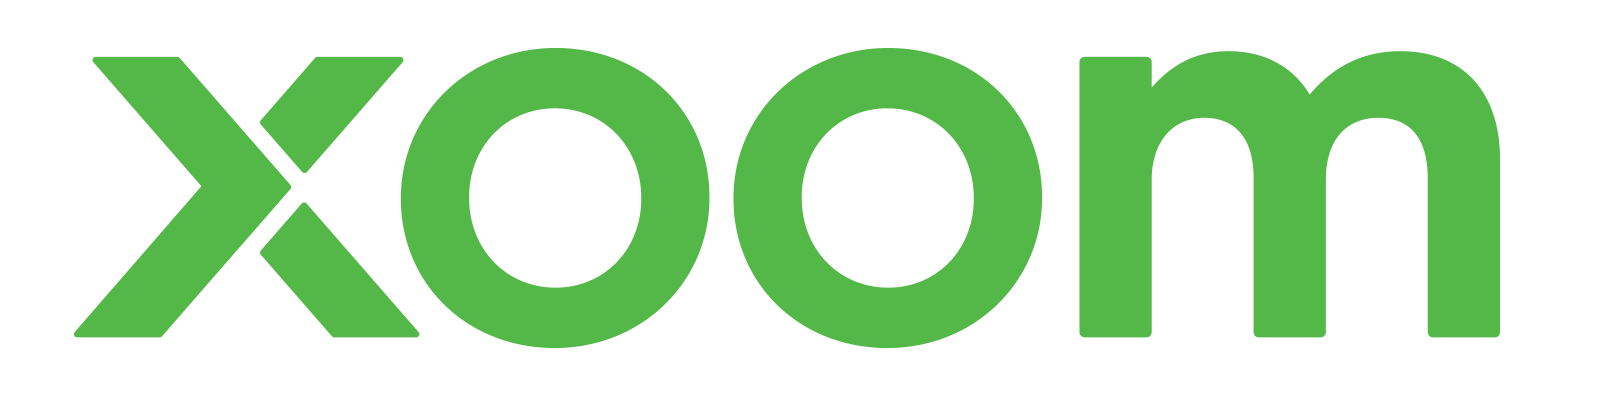 xoom paypal logo